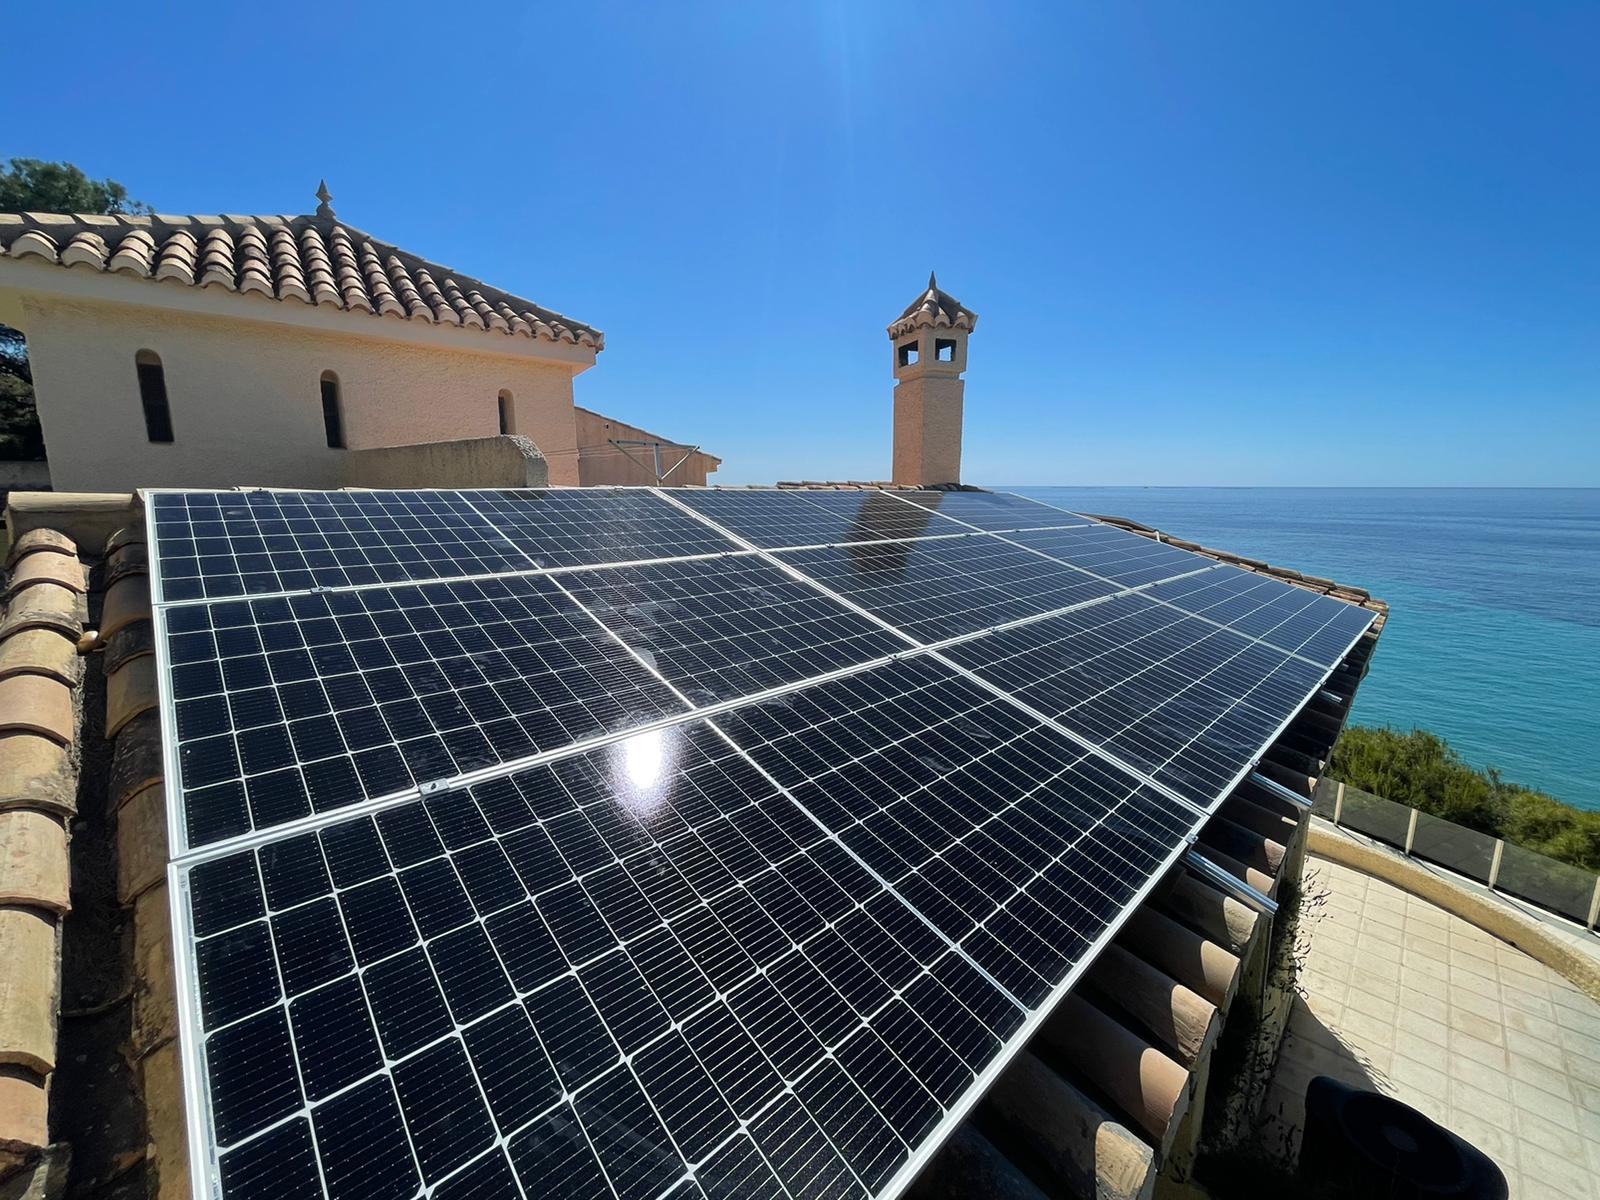 13X 460 wp Paneles Solares, El Campello, Alicante (Sistema híbrido)